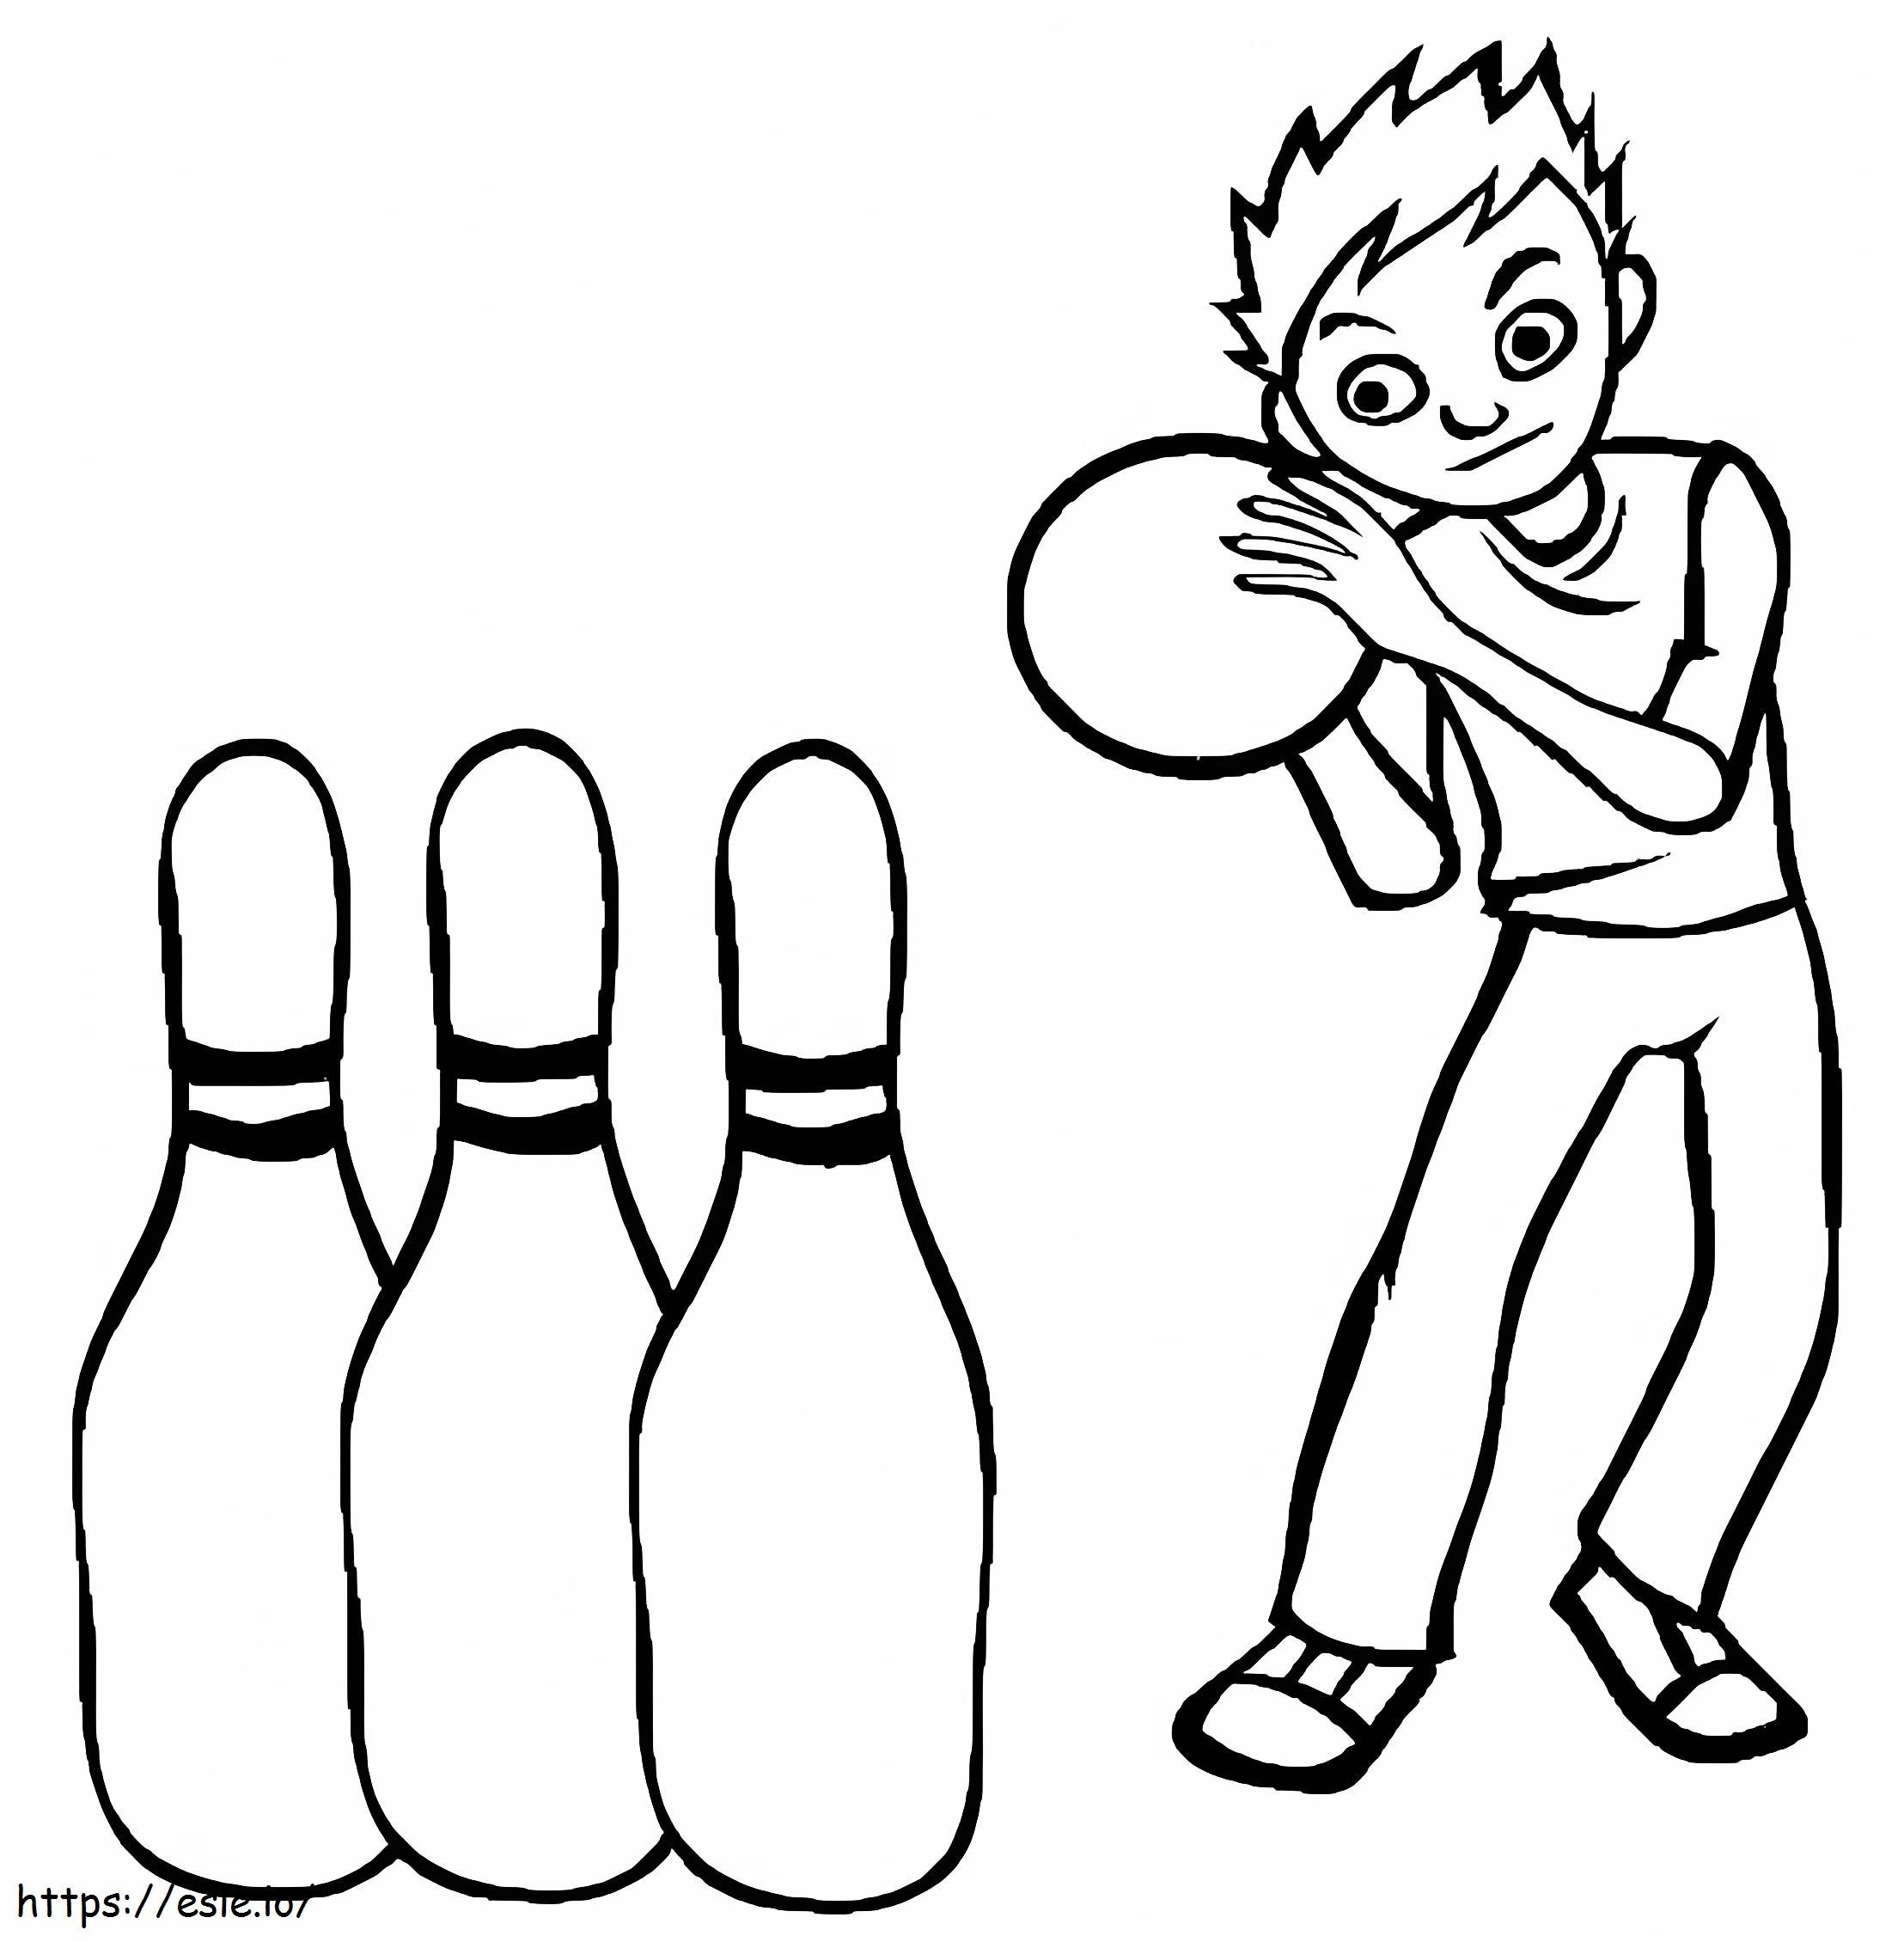 Junge spielt Bowling ausmalbilder